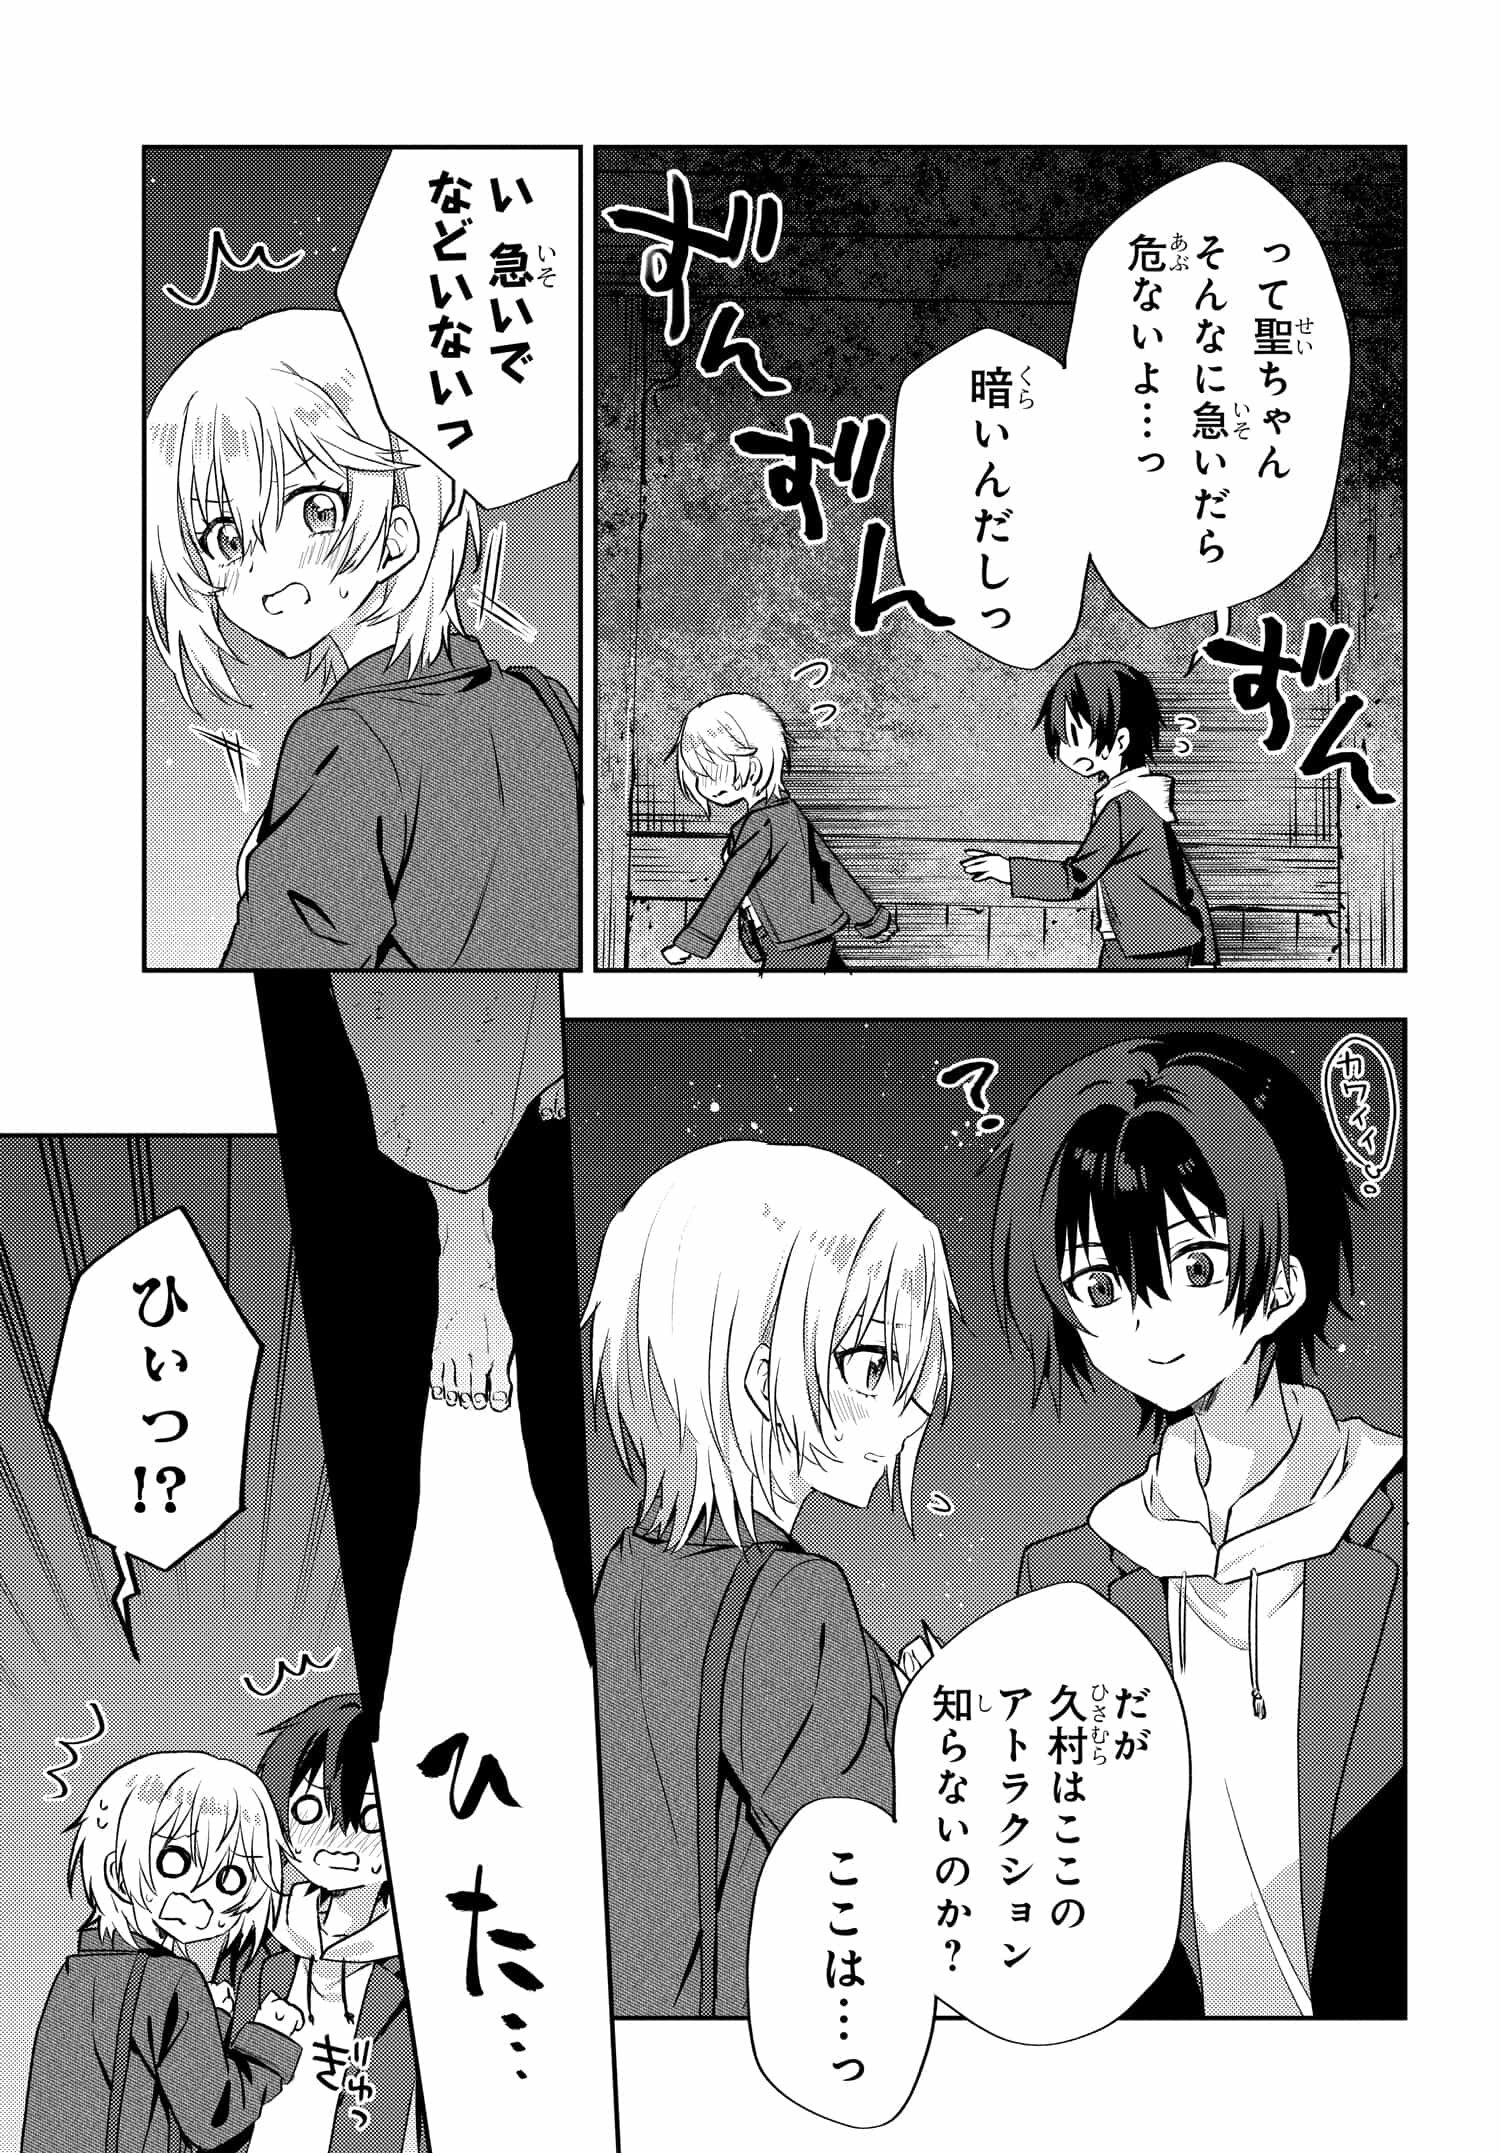 Romcom Manga ni Haitte Shimatta no de, Oshi no Make Heroine wo Zenryoku de Shiawase ni suru - Chapter 7.2 - Page 8